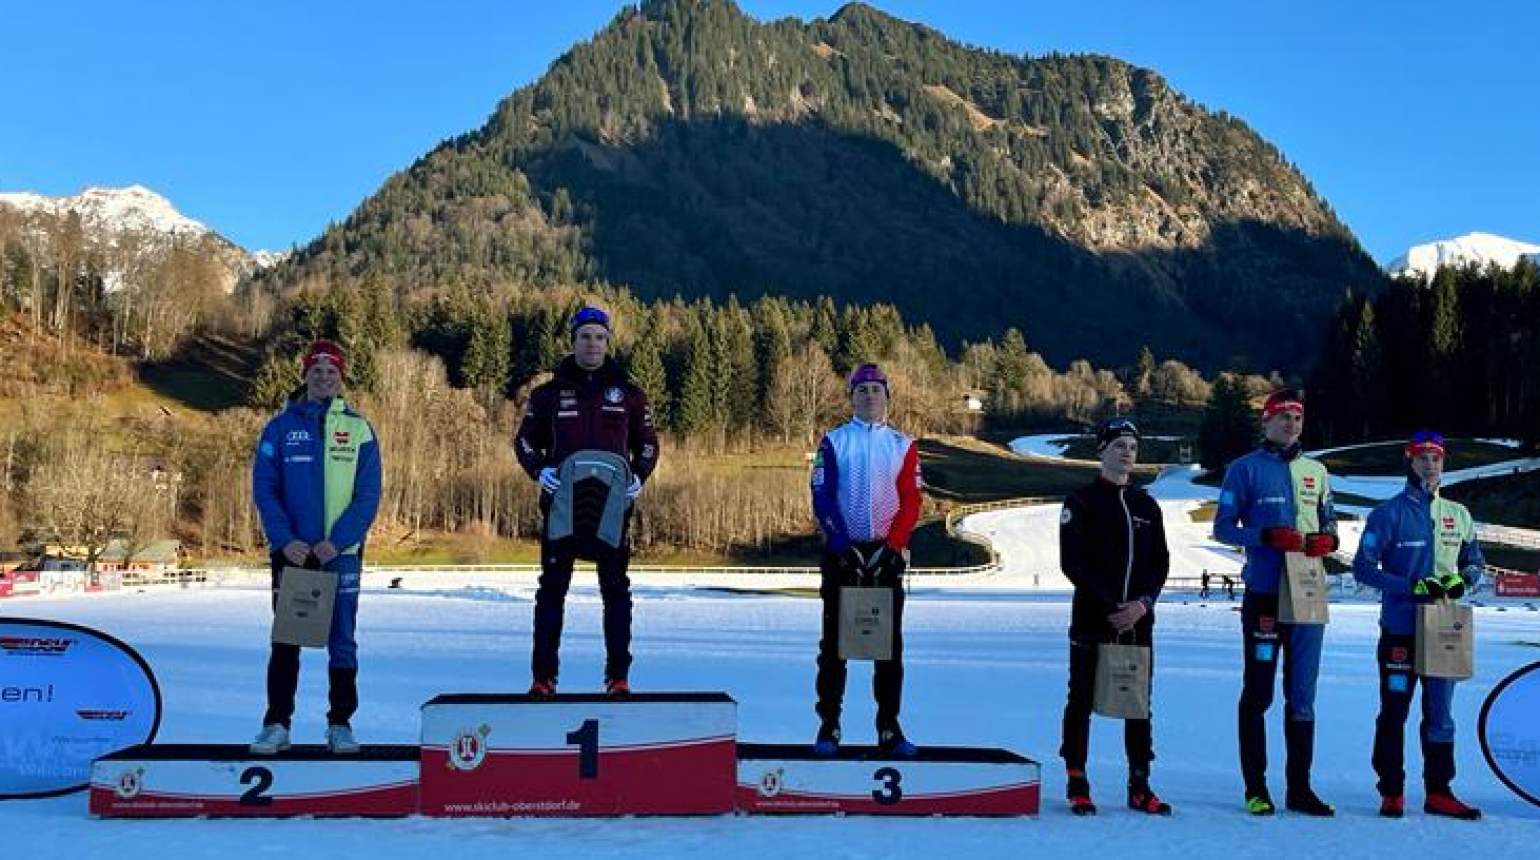 Alpen Cup: Tuž vybojoval mezi juniory ve sprintu skvělé čtvrté místo! Šeller byl mezi muži pátý